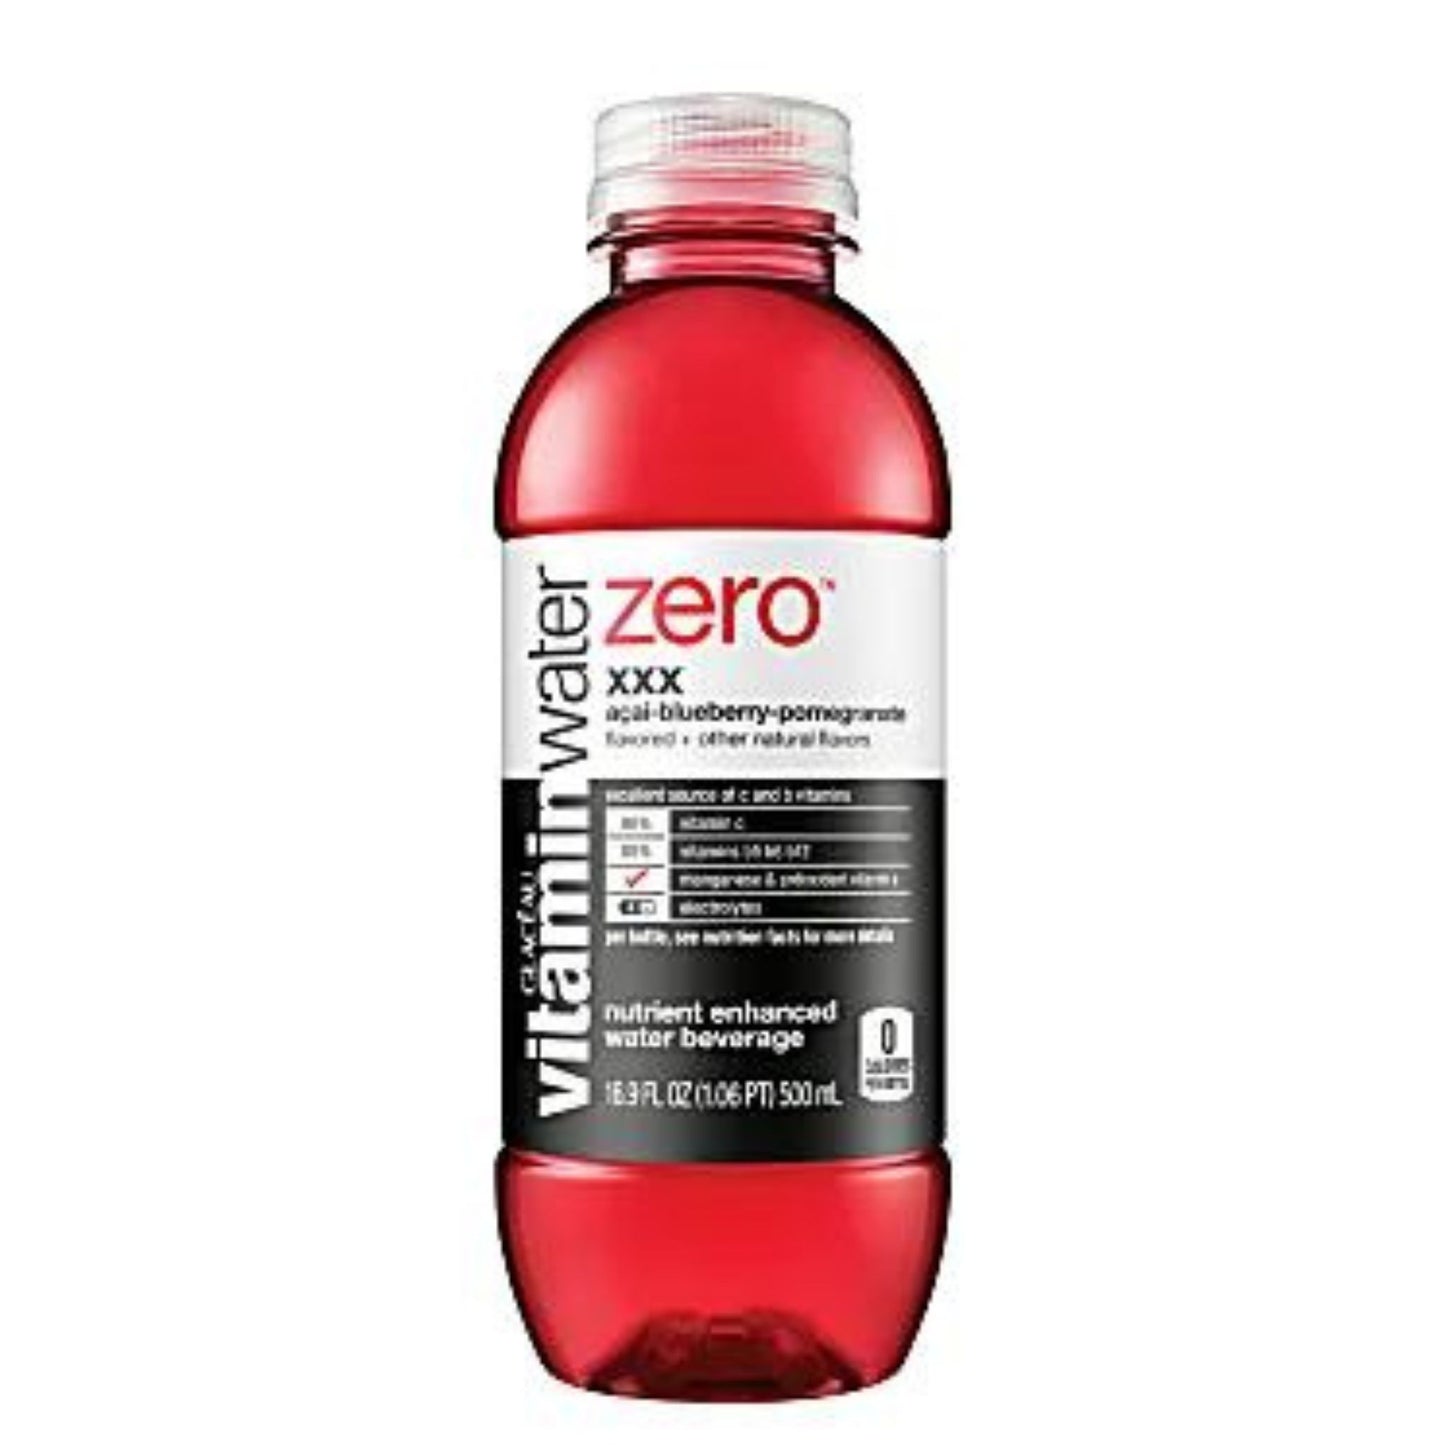 Glacéau vitaminwaterzero XXX with Açai-Blueberry-Pomegranate Flavor, 16.9 Oz, 1 Bottle